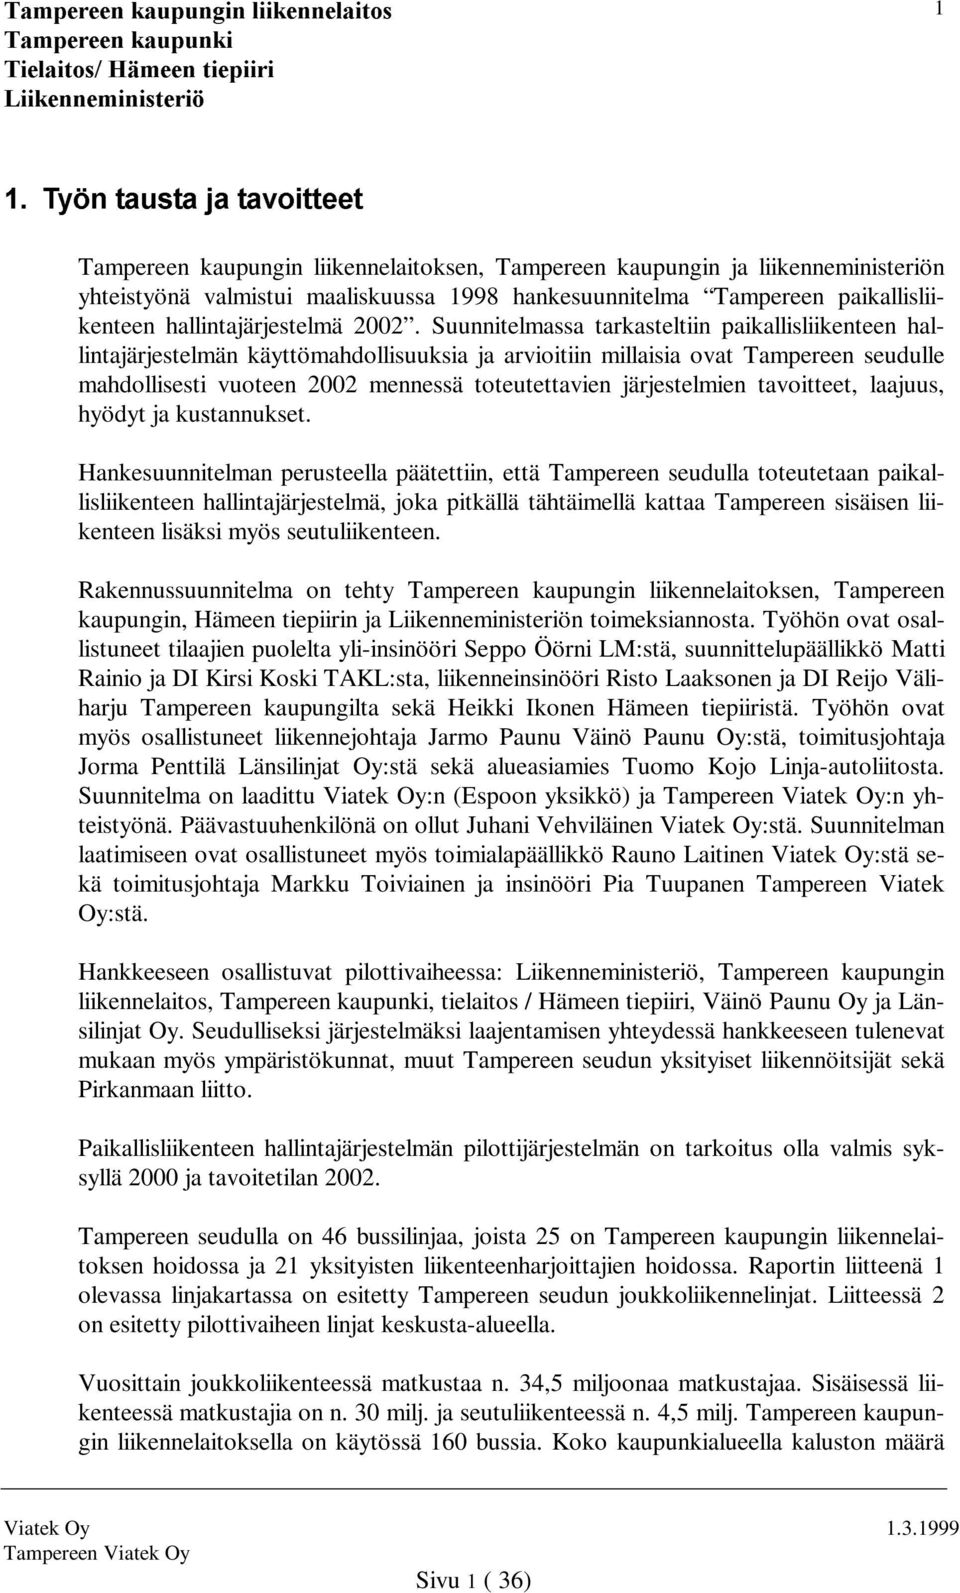 Suunnitelmassa tarkasteltiin paikallisliikenteen hallintajärjestelmän käyttömahdollisuuksia ja arvioitiin millaisia ovat Tampereen seudulle mahdollisesti vuoteen 2002 mennessä toteutettavien